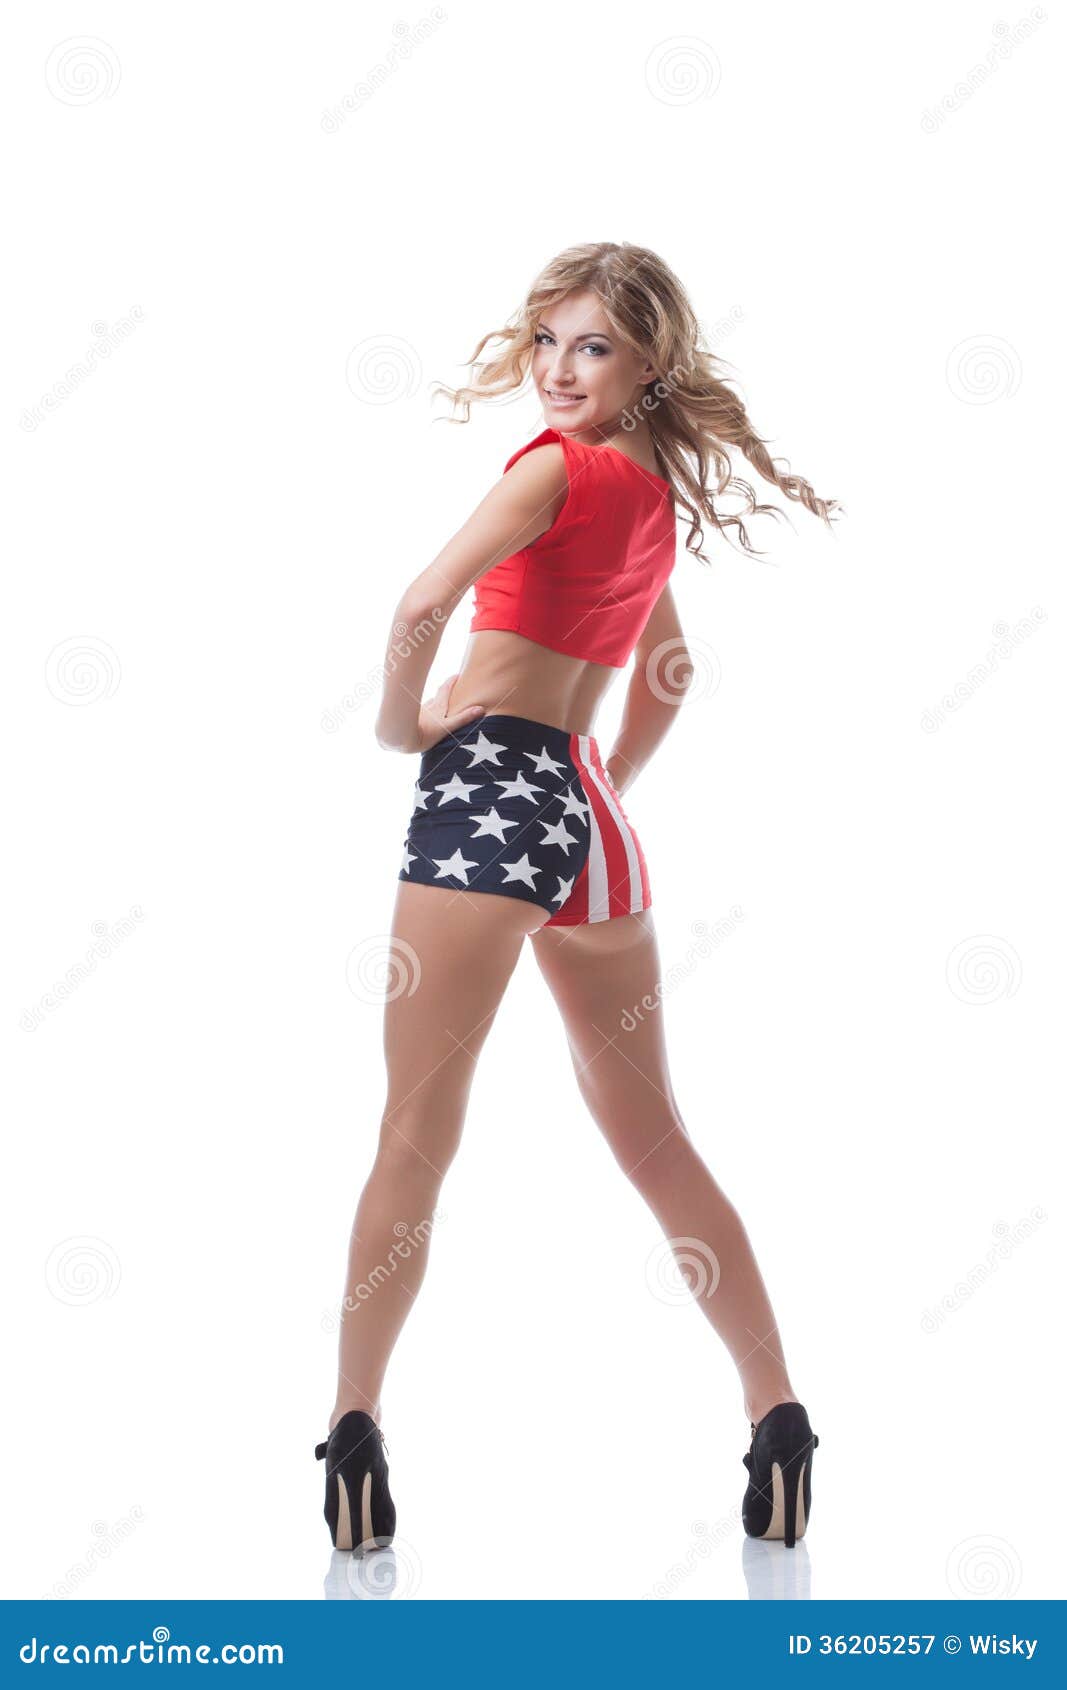 Playful Slim Woman Posing in Patriotic Costume Stock Image